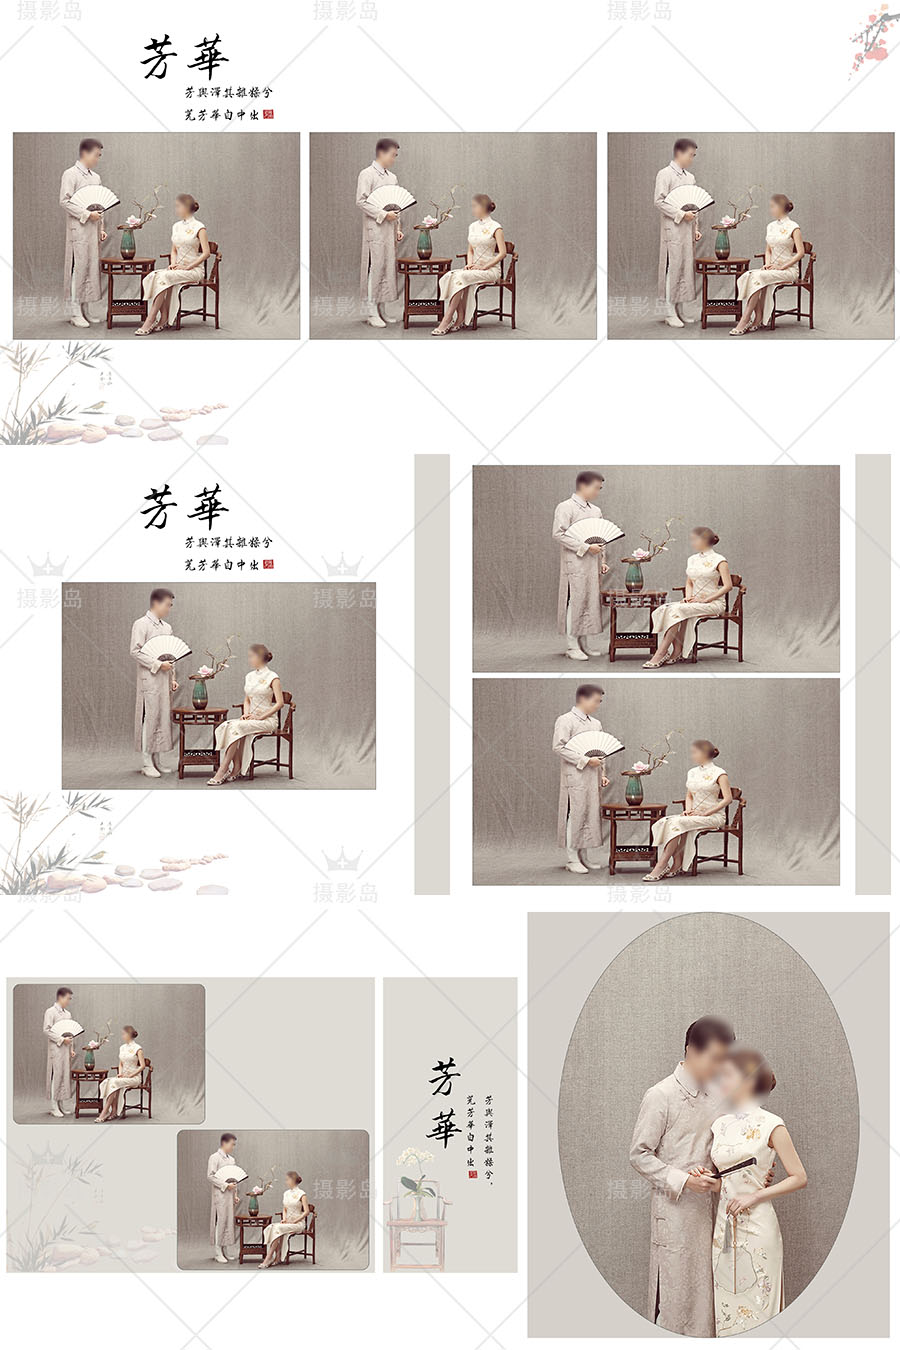 中国风工笔画古装婚纱摄影PSD相册模板，影楼情侣写真后期相册排版素材